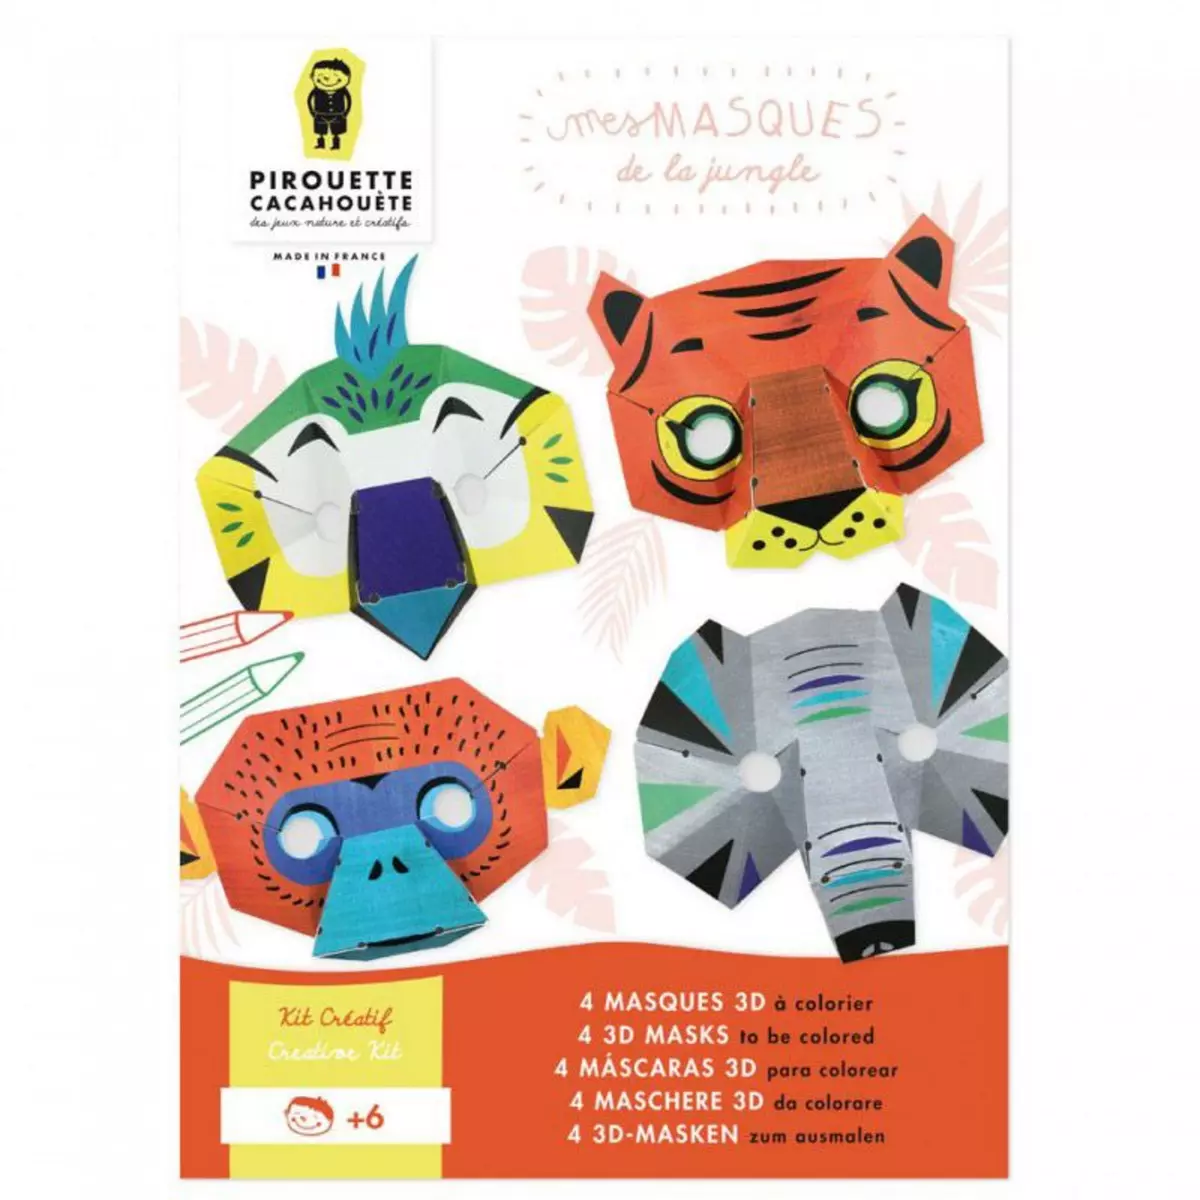 PIROUETTE CACAHOUETE Kit créatif - 4 masques de la jungle à fabriquer et décorer